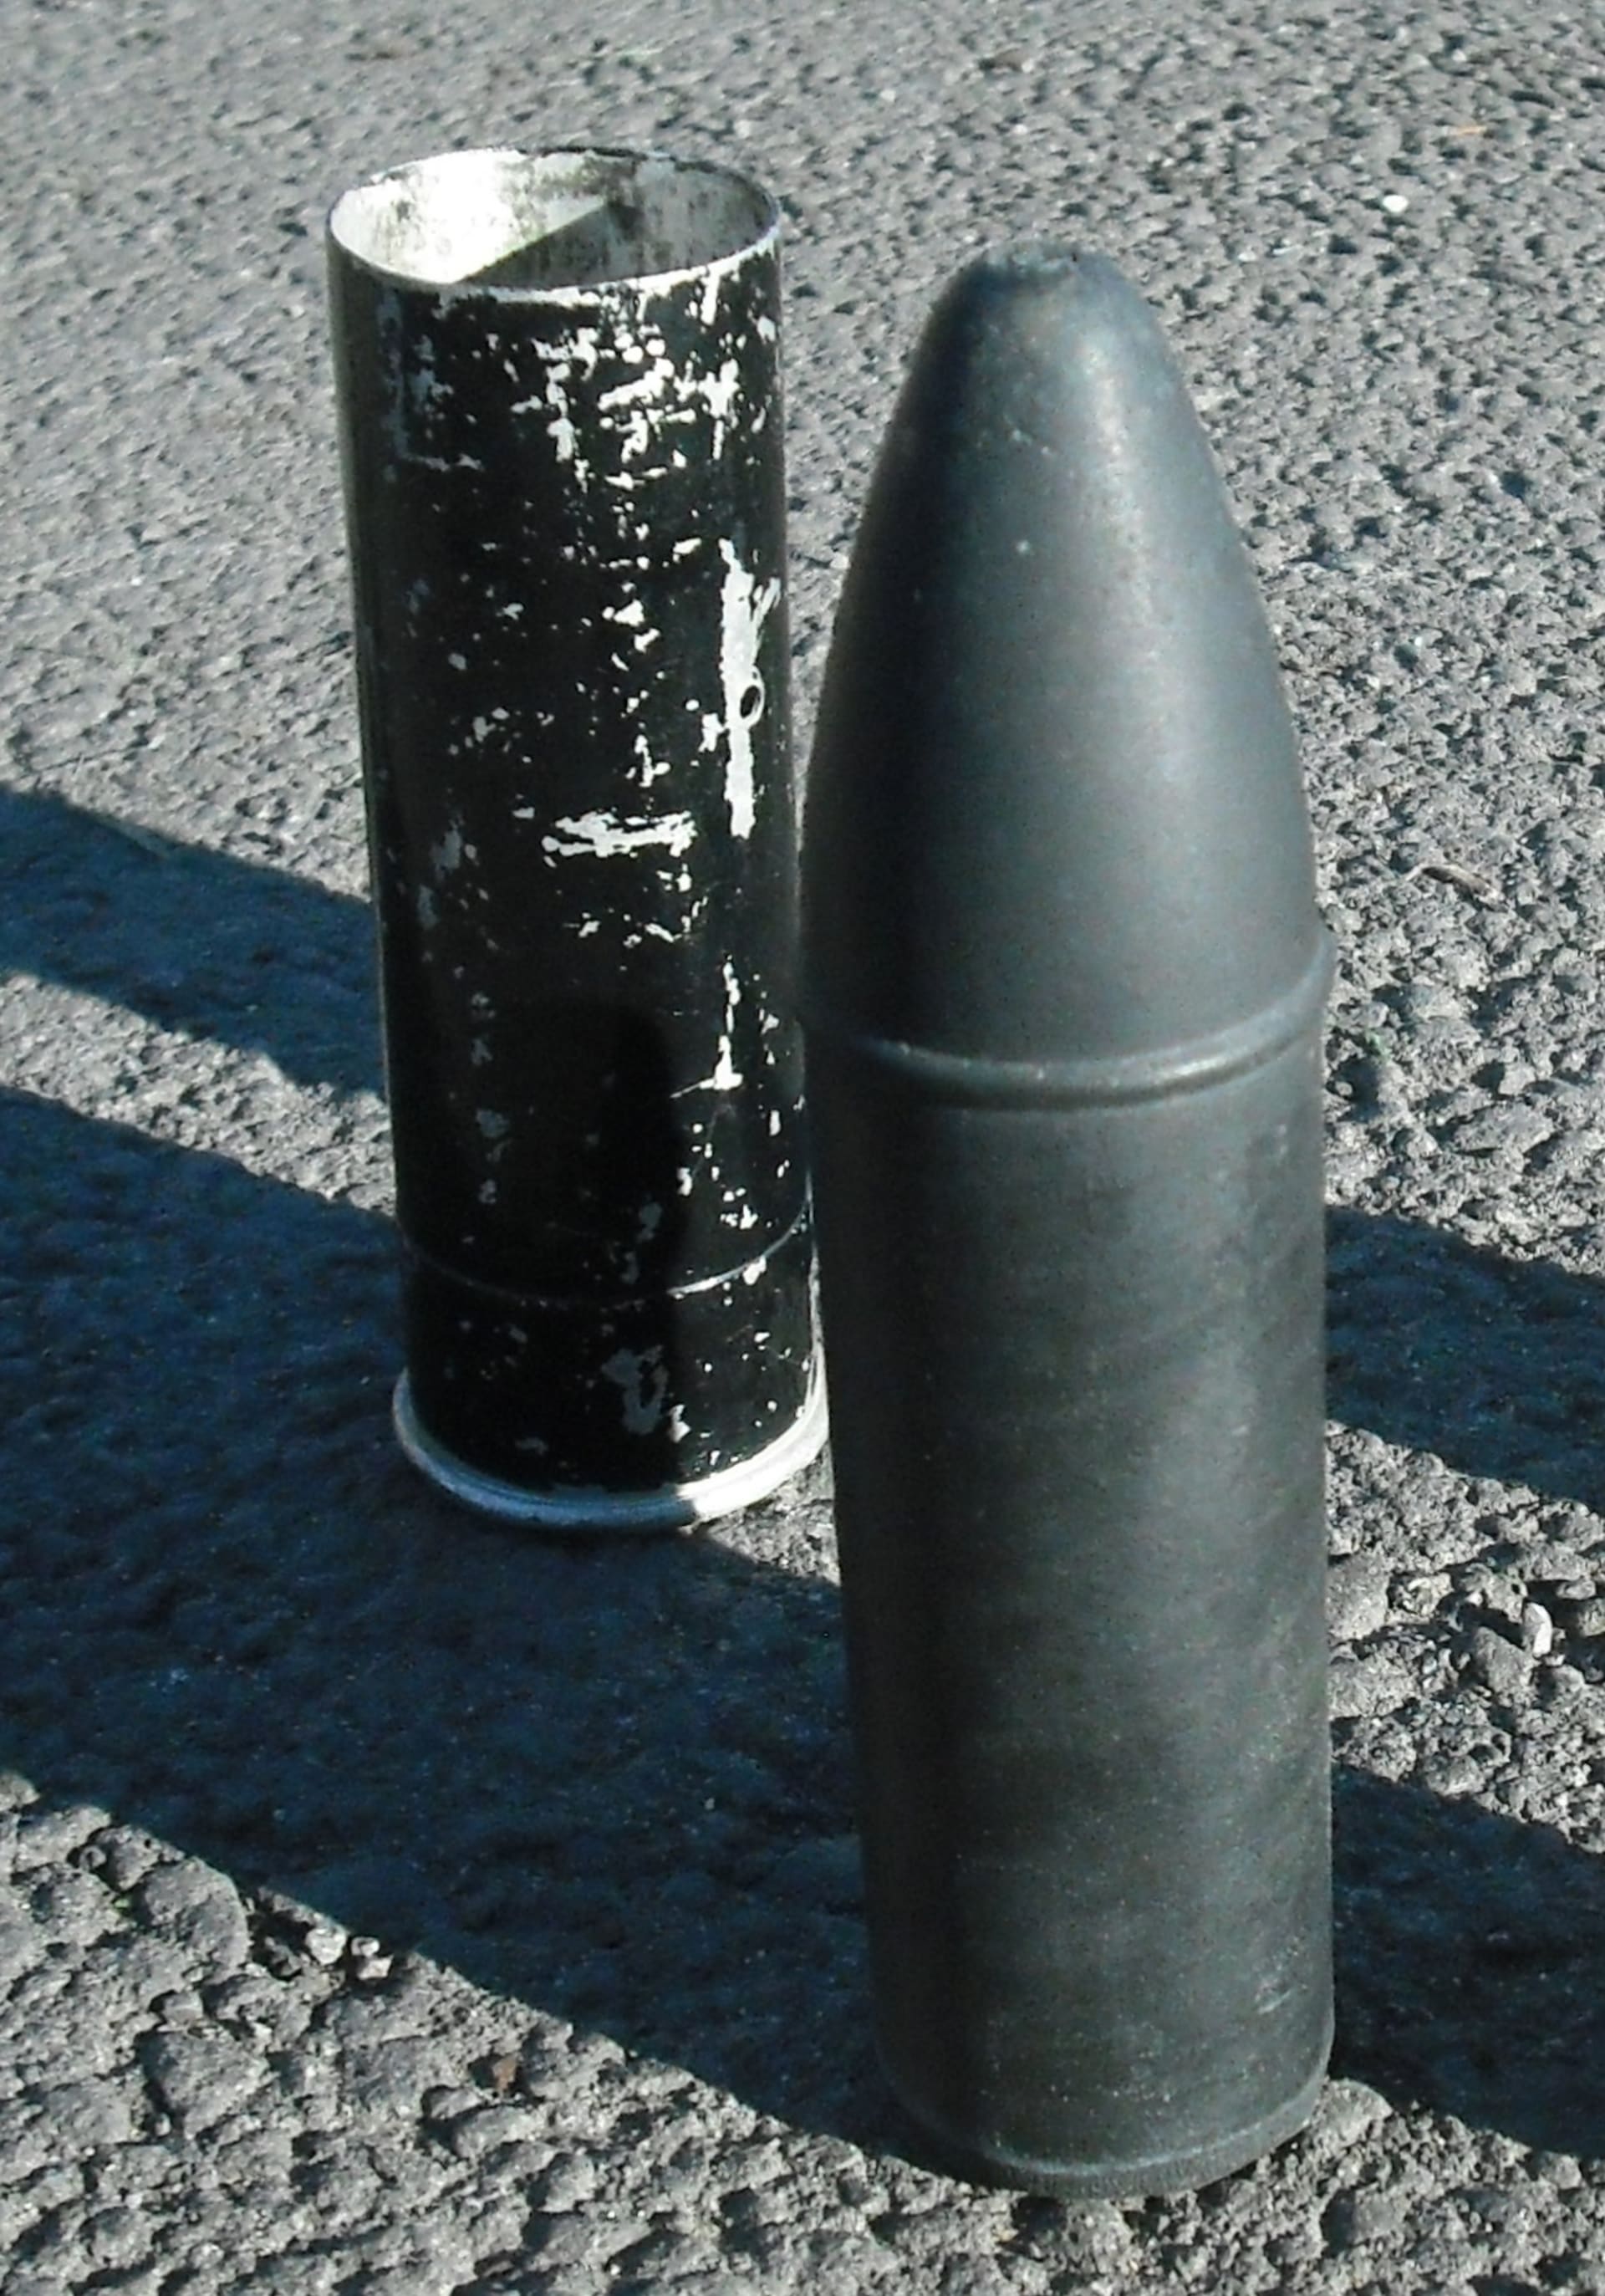 Gumový projektil používaný britskými vojáky v Severním Irsku